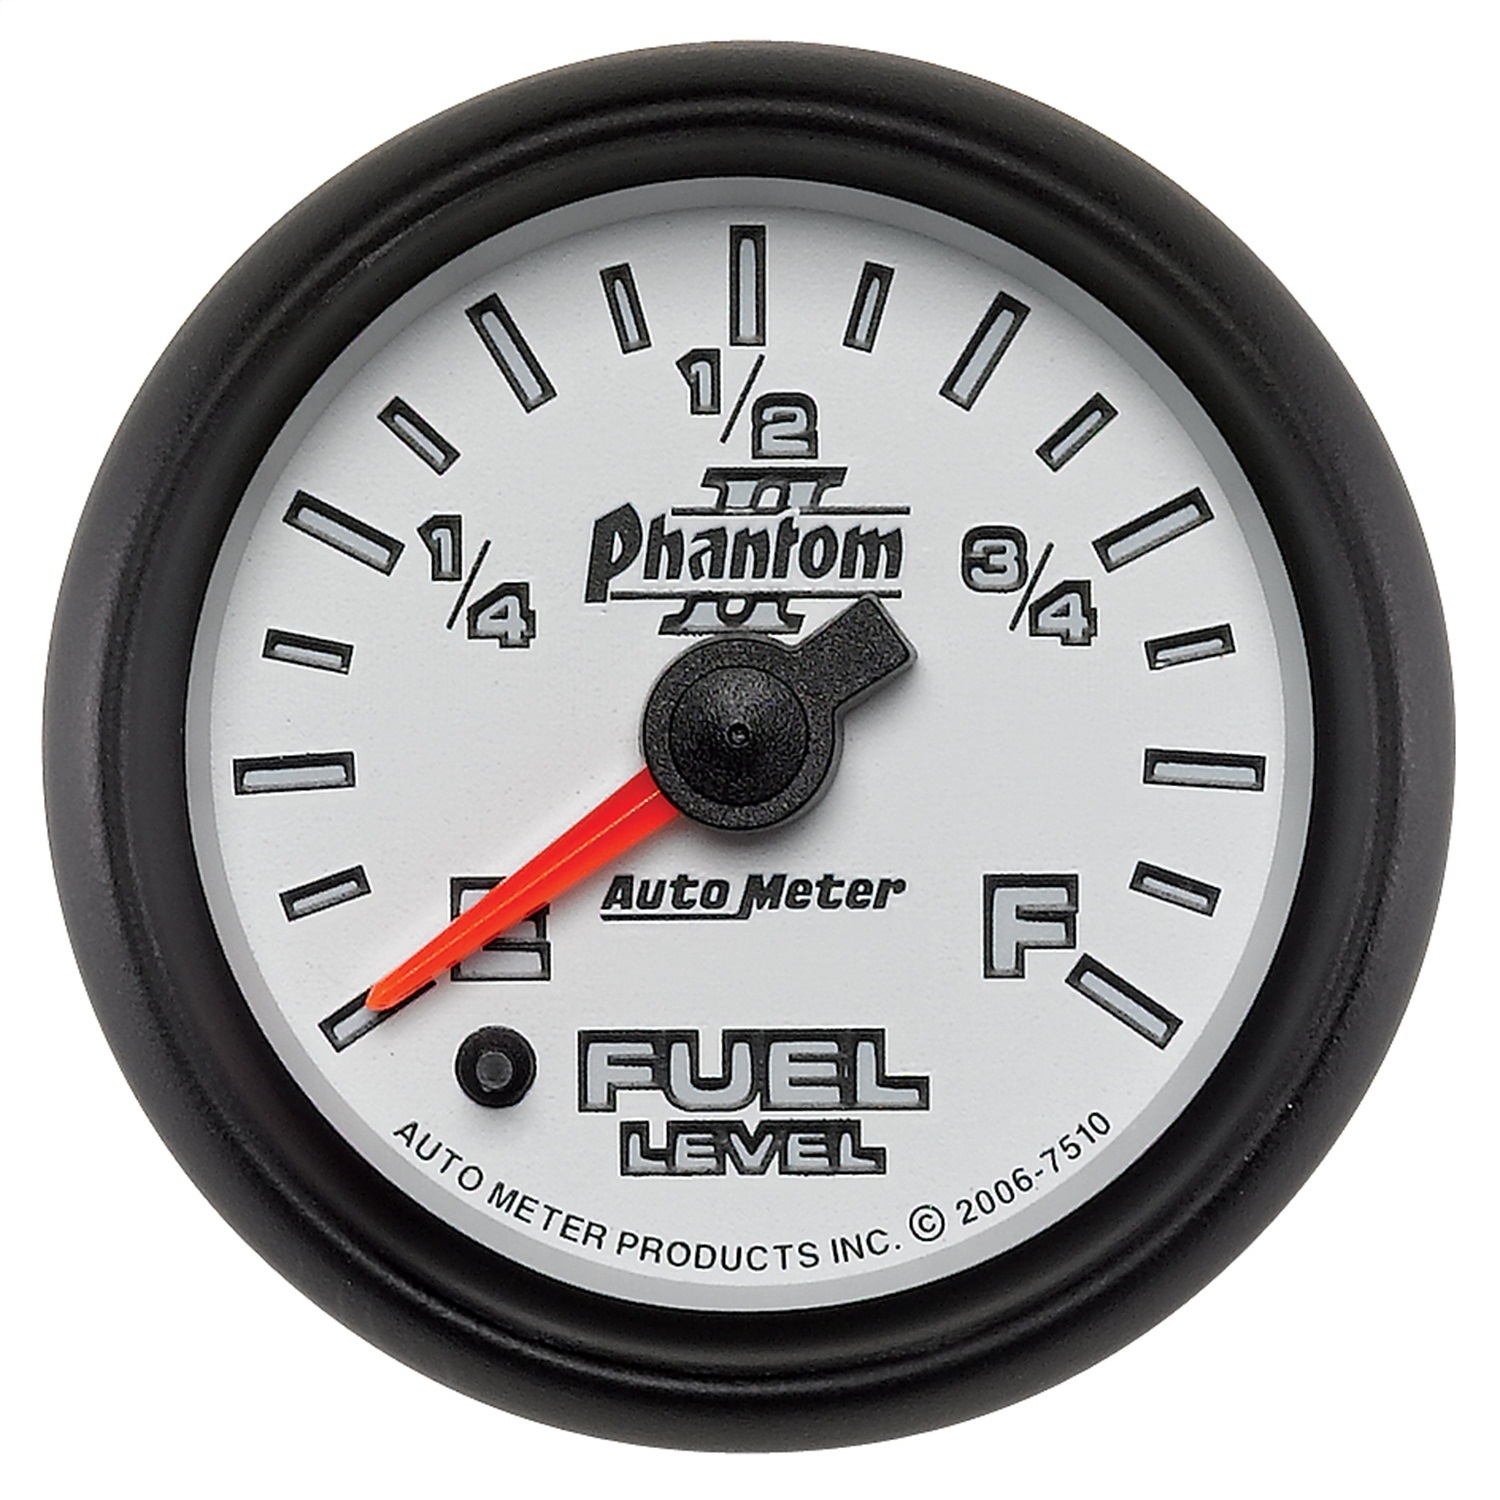 Auto Meter Auto Meter 7510 Phantom II; Electric Programmable Fuel Level Gauge